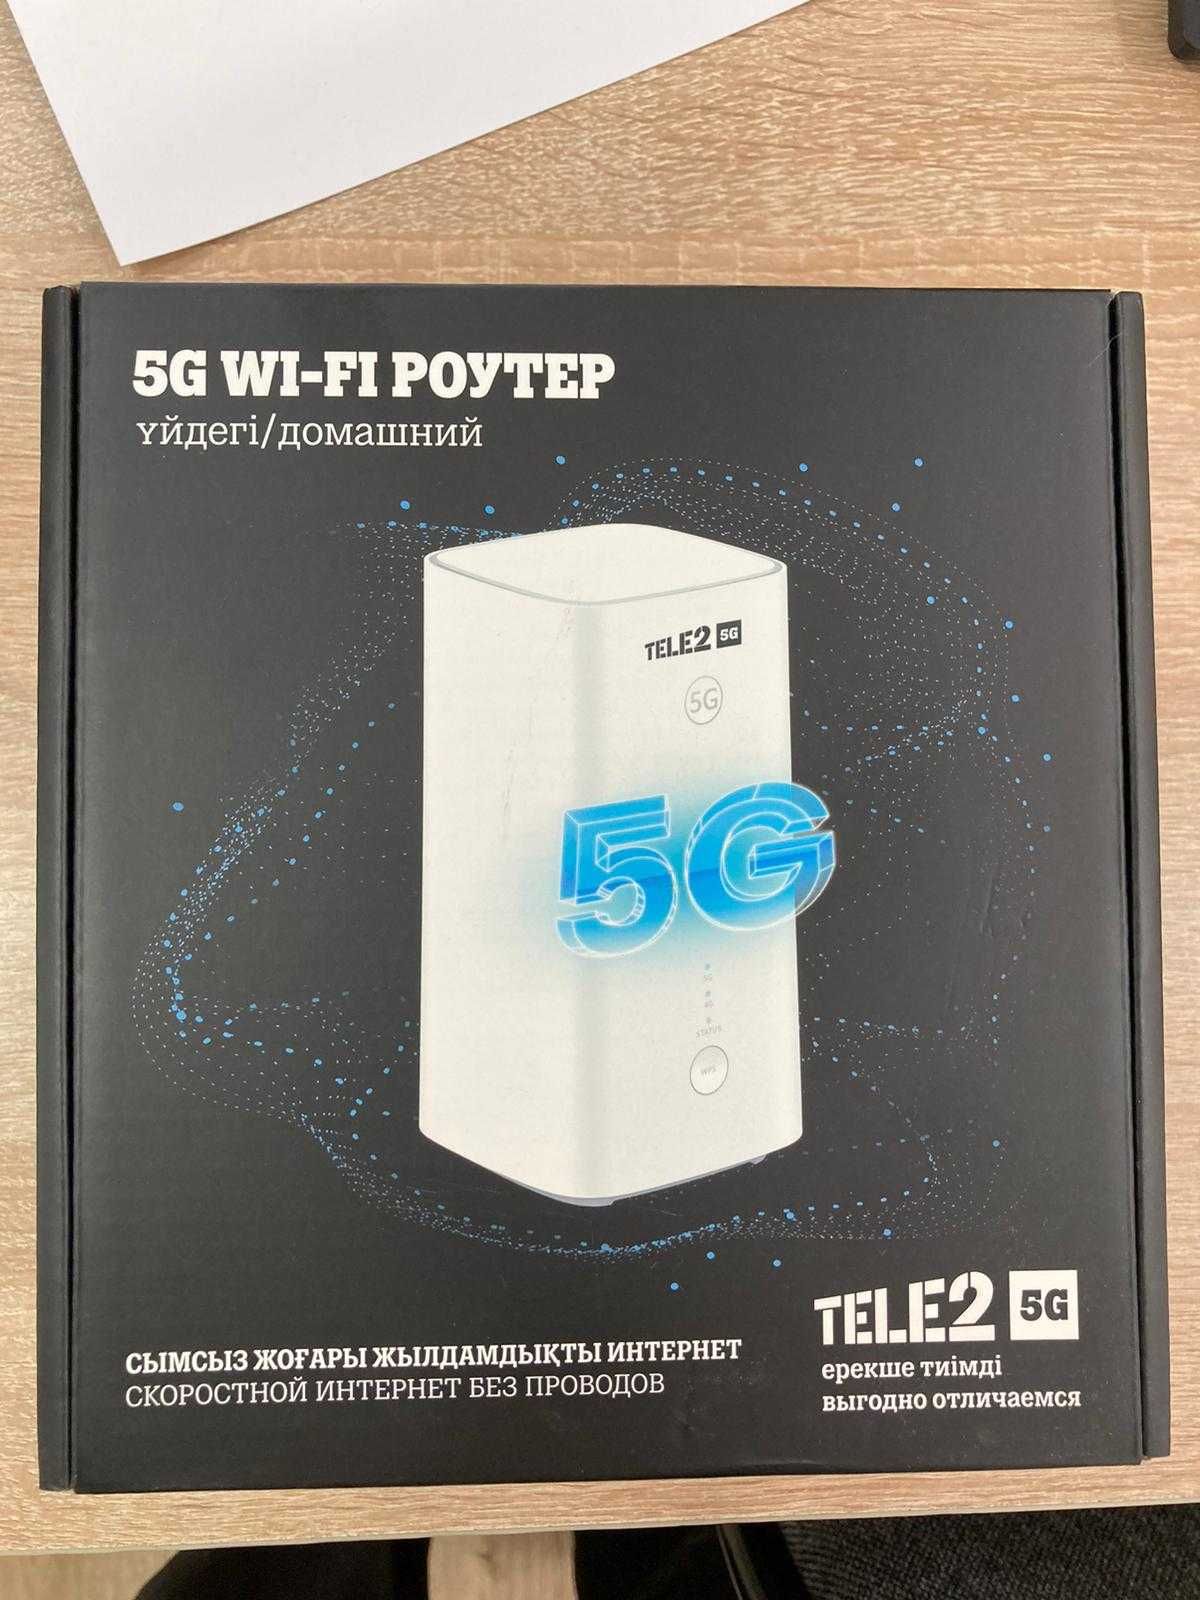 Продаётся Tele2 Wi-Fi Роутер 5G